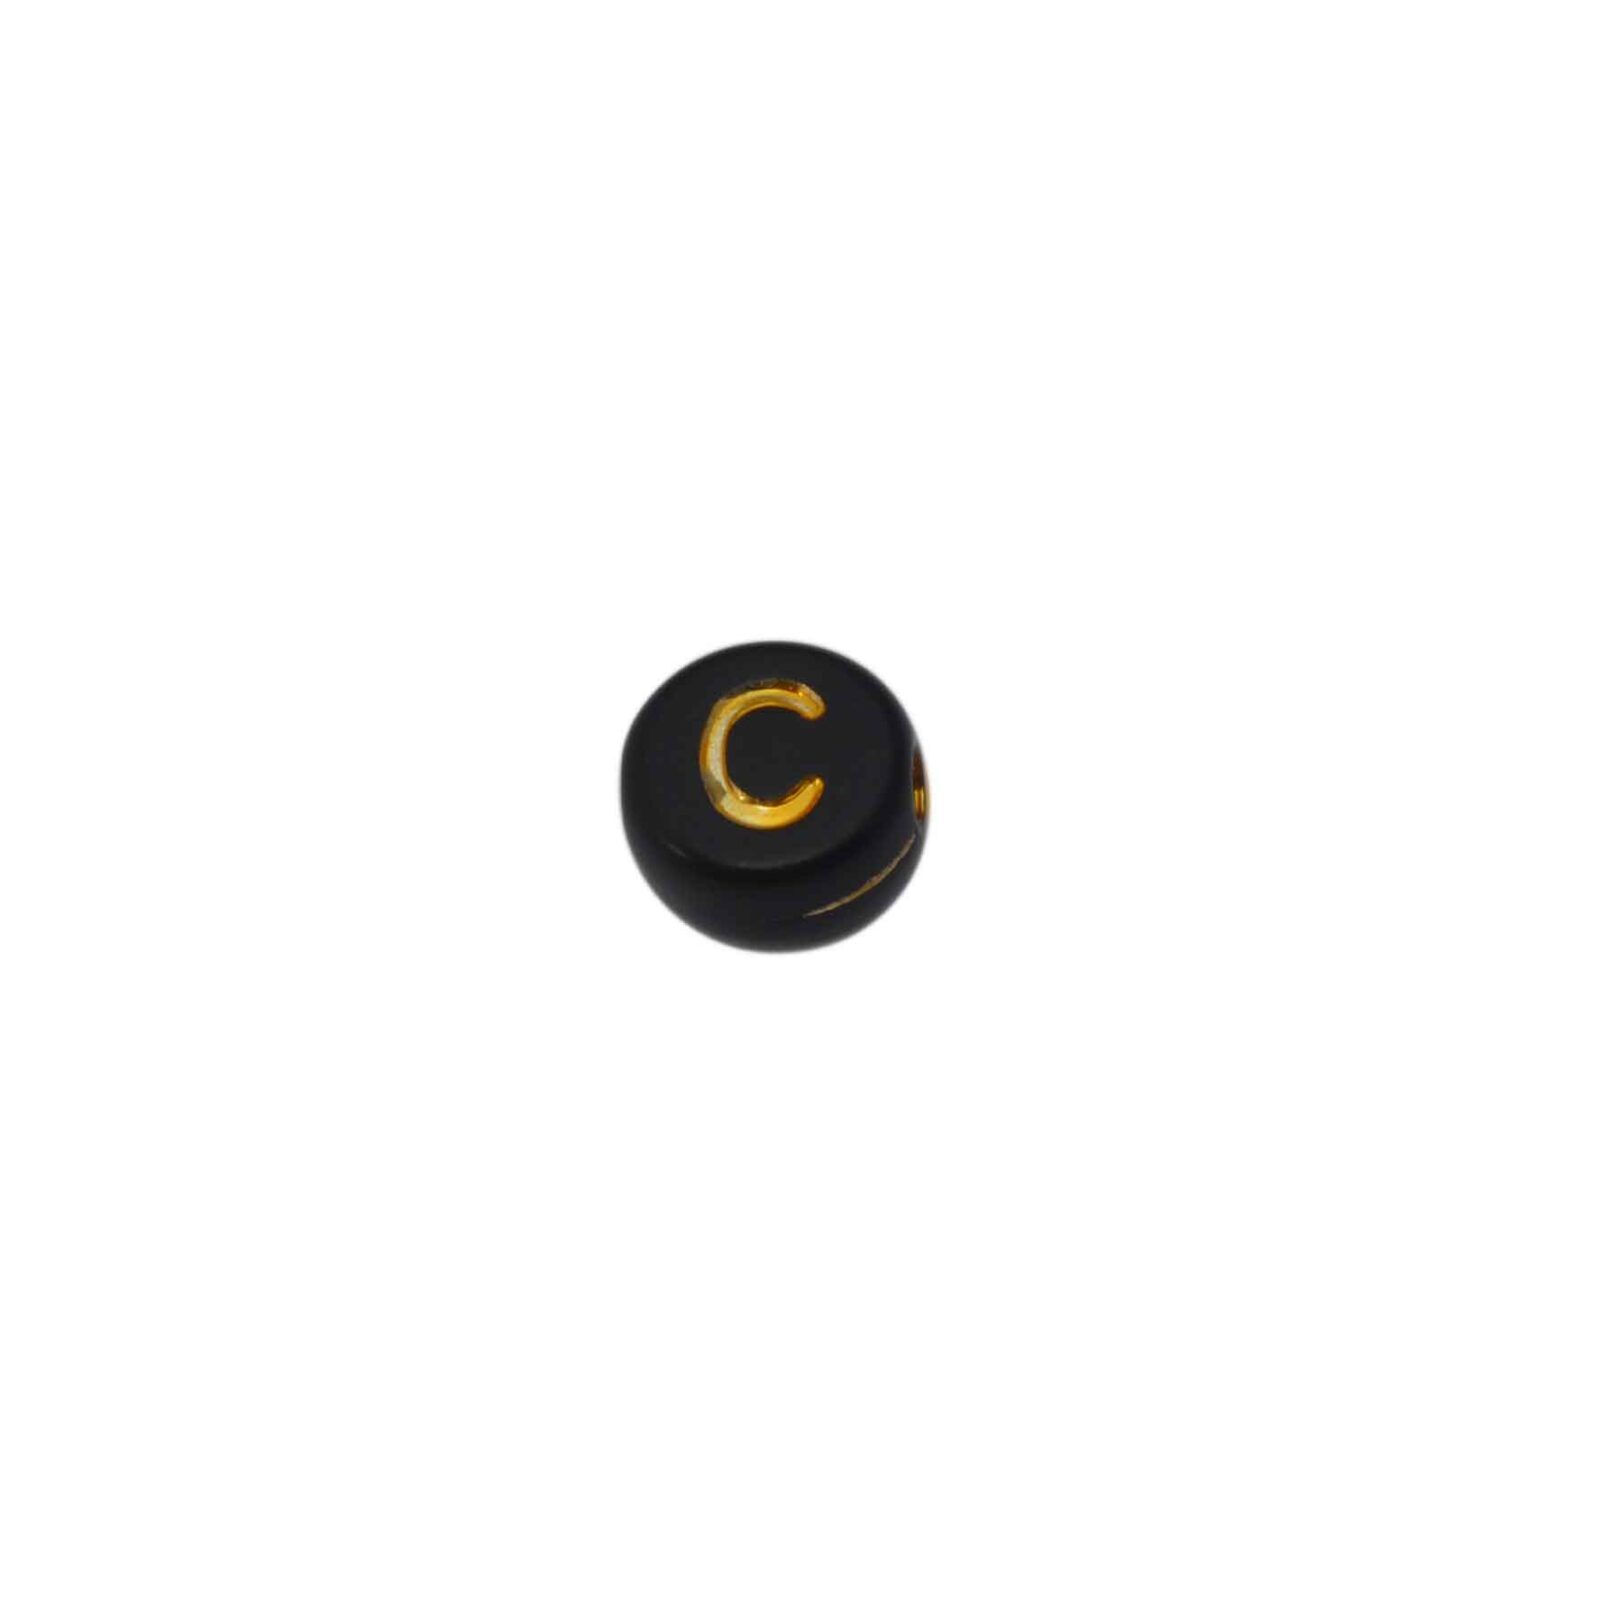 Zwarte ronde letterkraal C